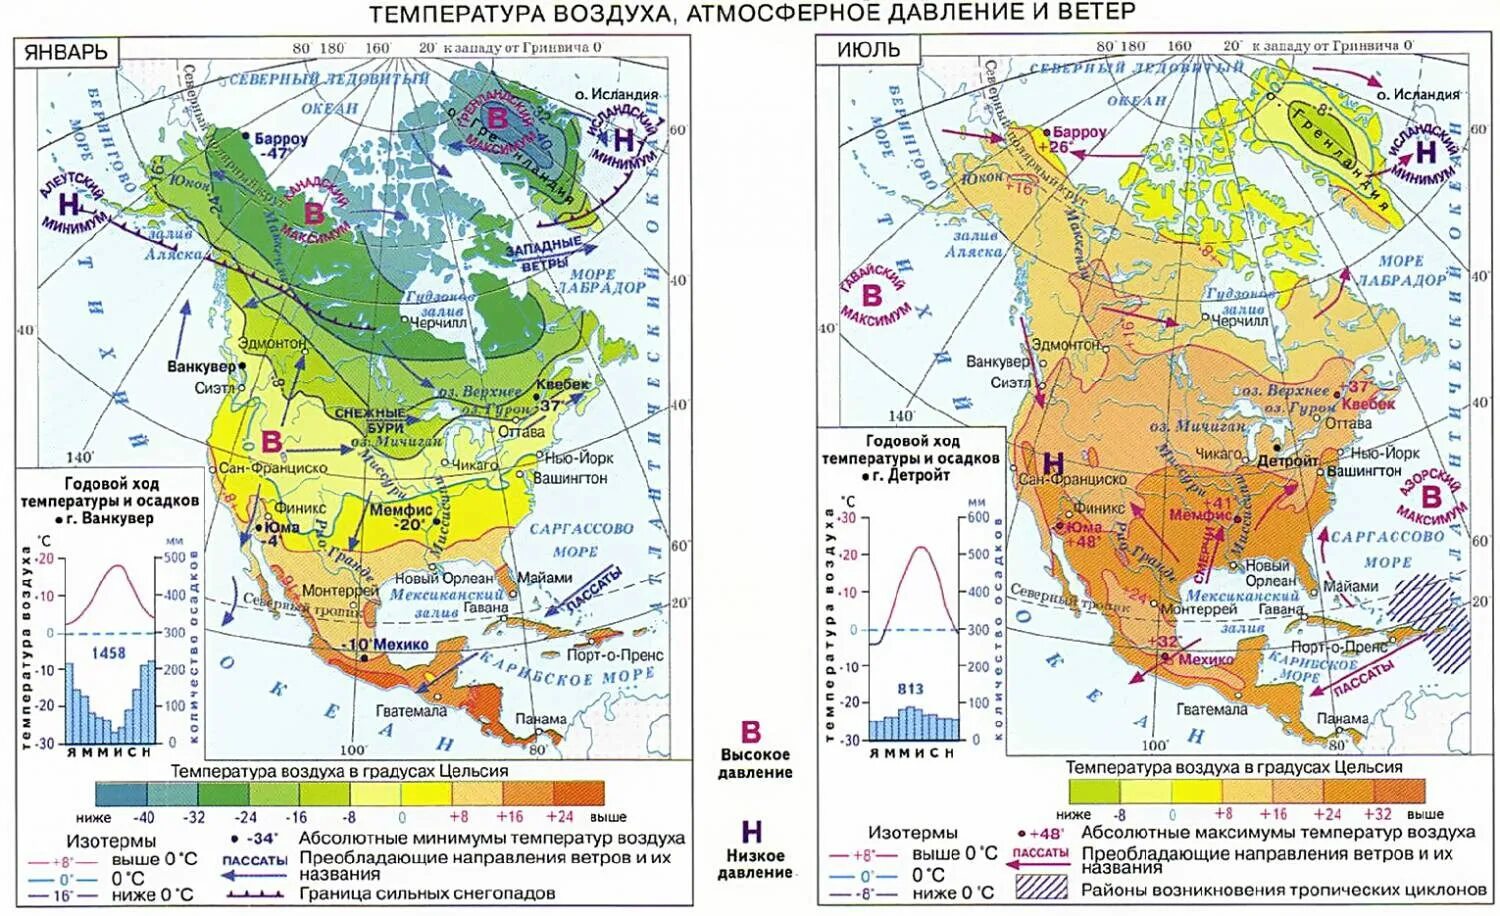 Климатическая карта Северной. Климатическая карта Северной Америки. Карта климатических поясов Северной Америки. Климатическая карта Северной Америки в атласе. Природные зоны и население северной америки